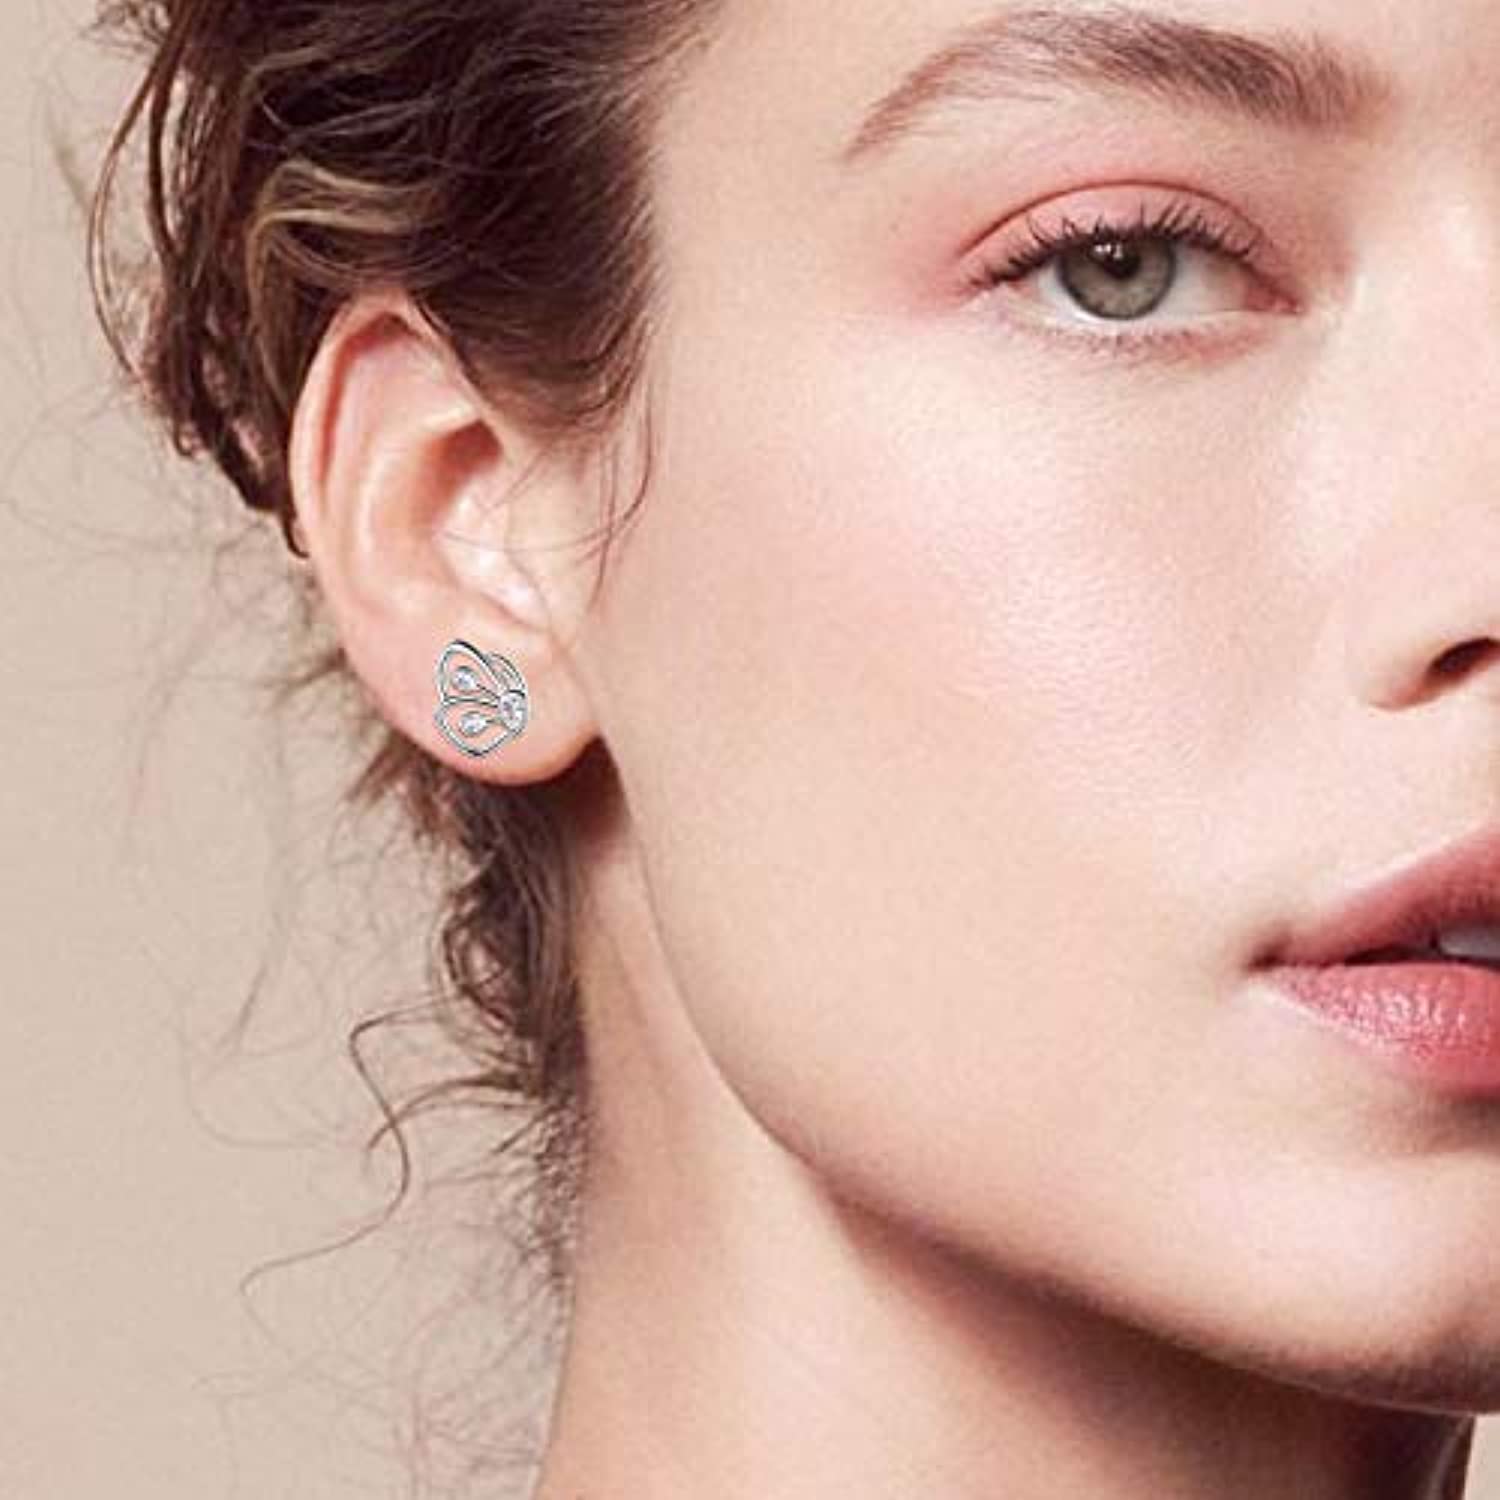 Sterling Silver Butterfly Stud Earrings Hypoallergenic Jewelry for Women